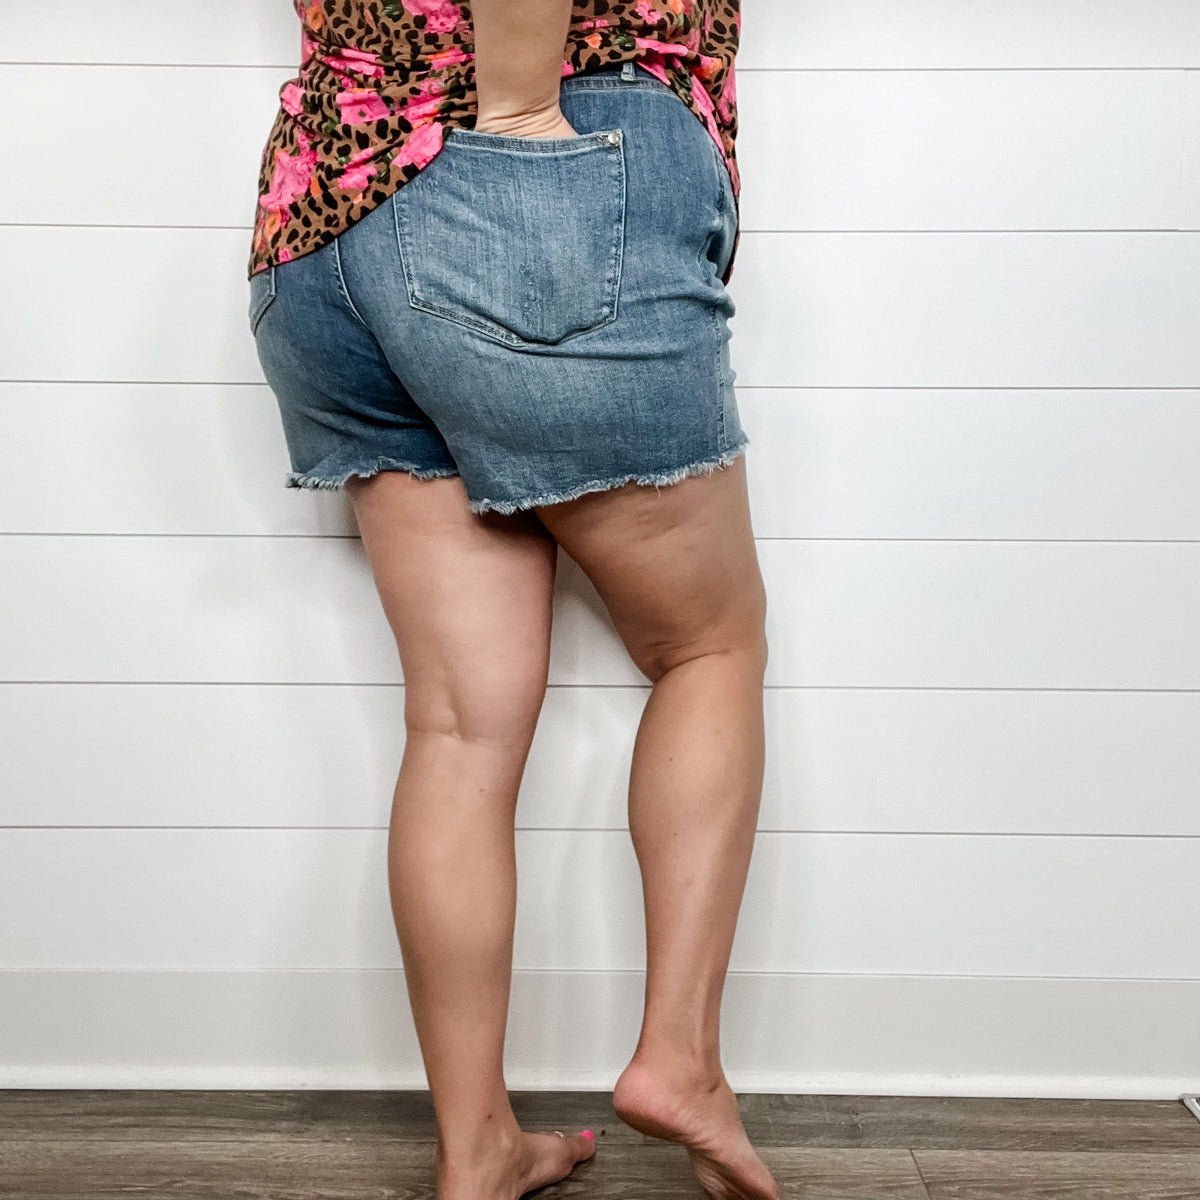 Judy Blue Reg/Plus Cruise Control Tummy Control Shorts – Charming